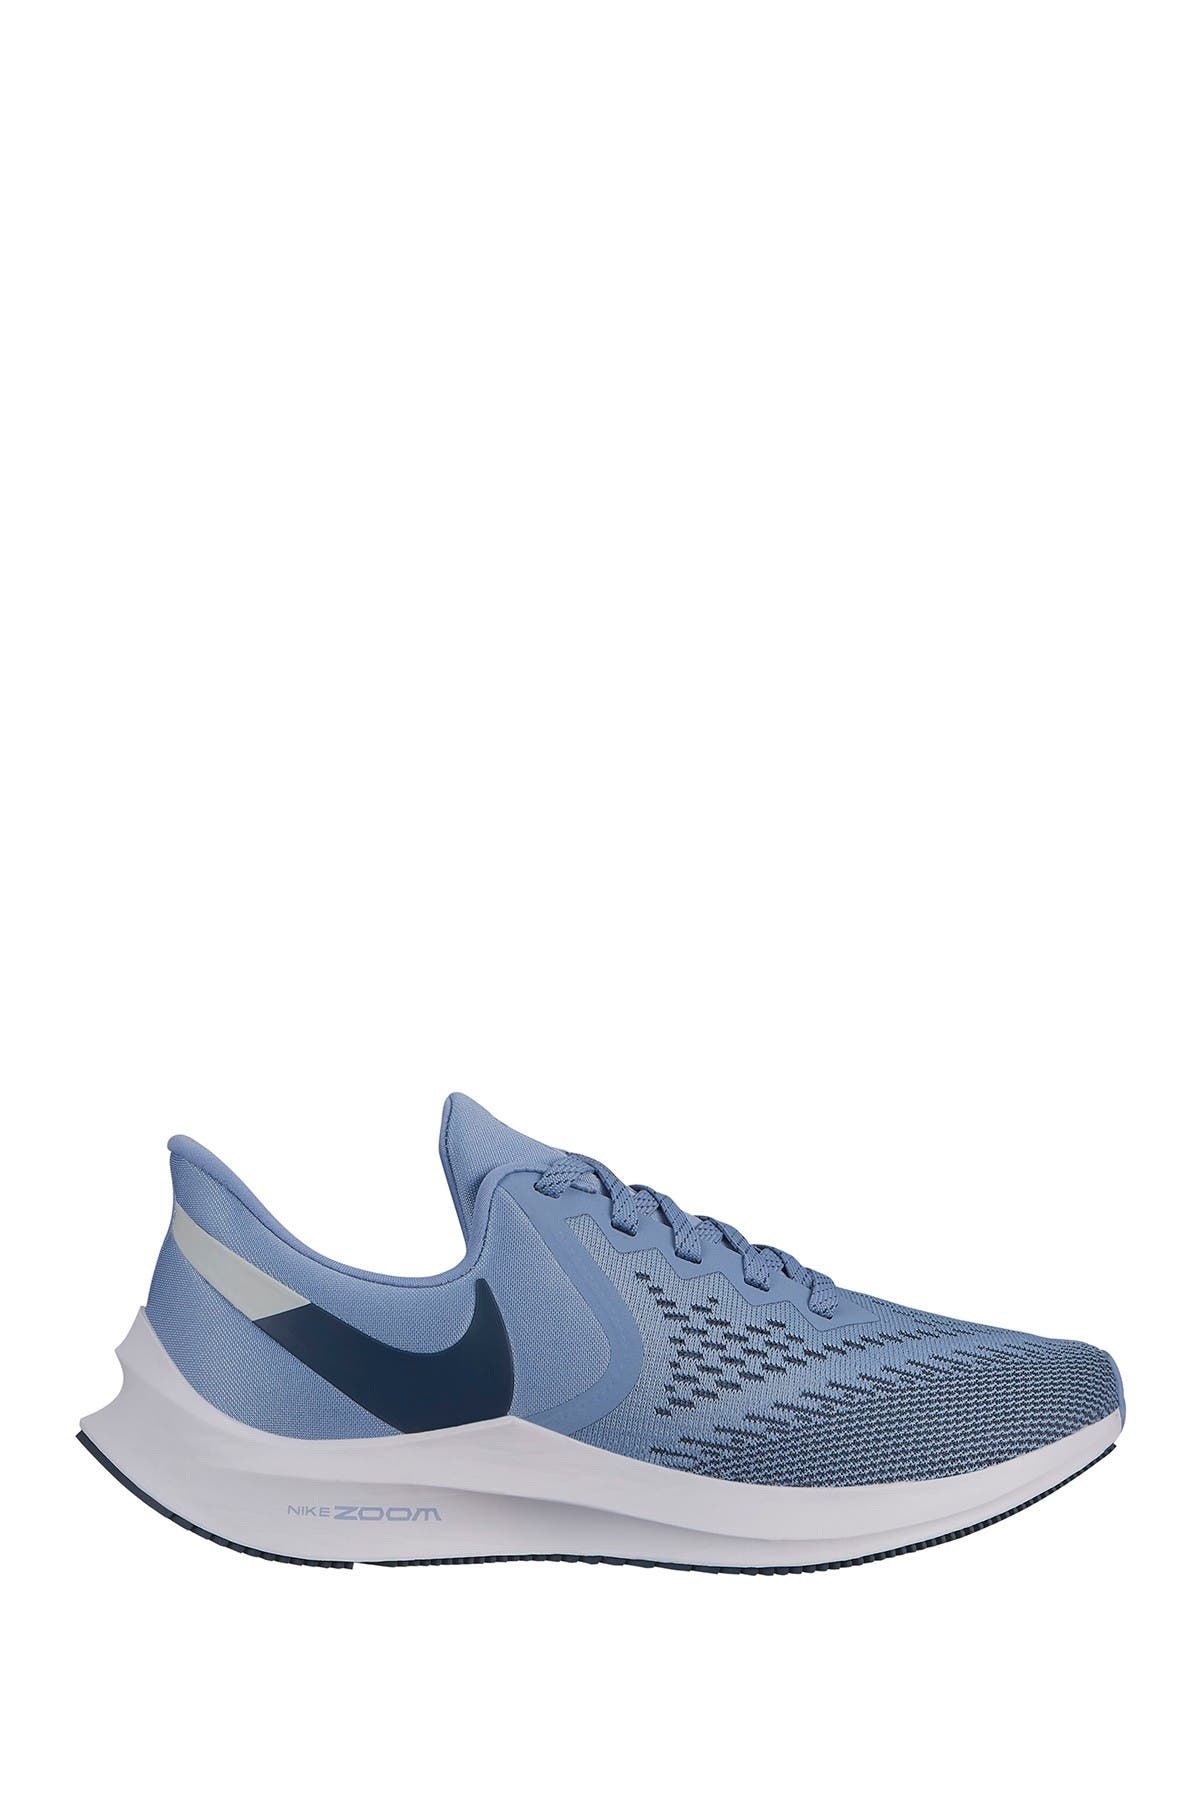 Nike | Zoom Winflo 6 Sneaker - Wide 